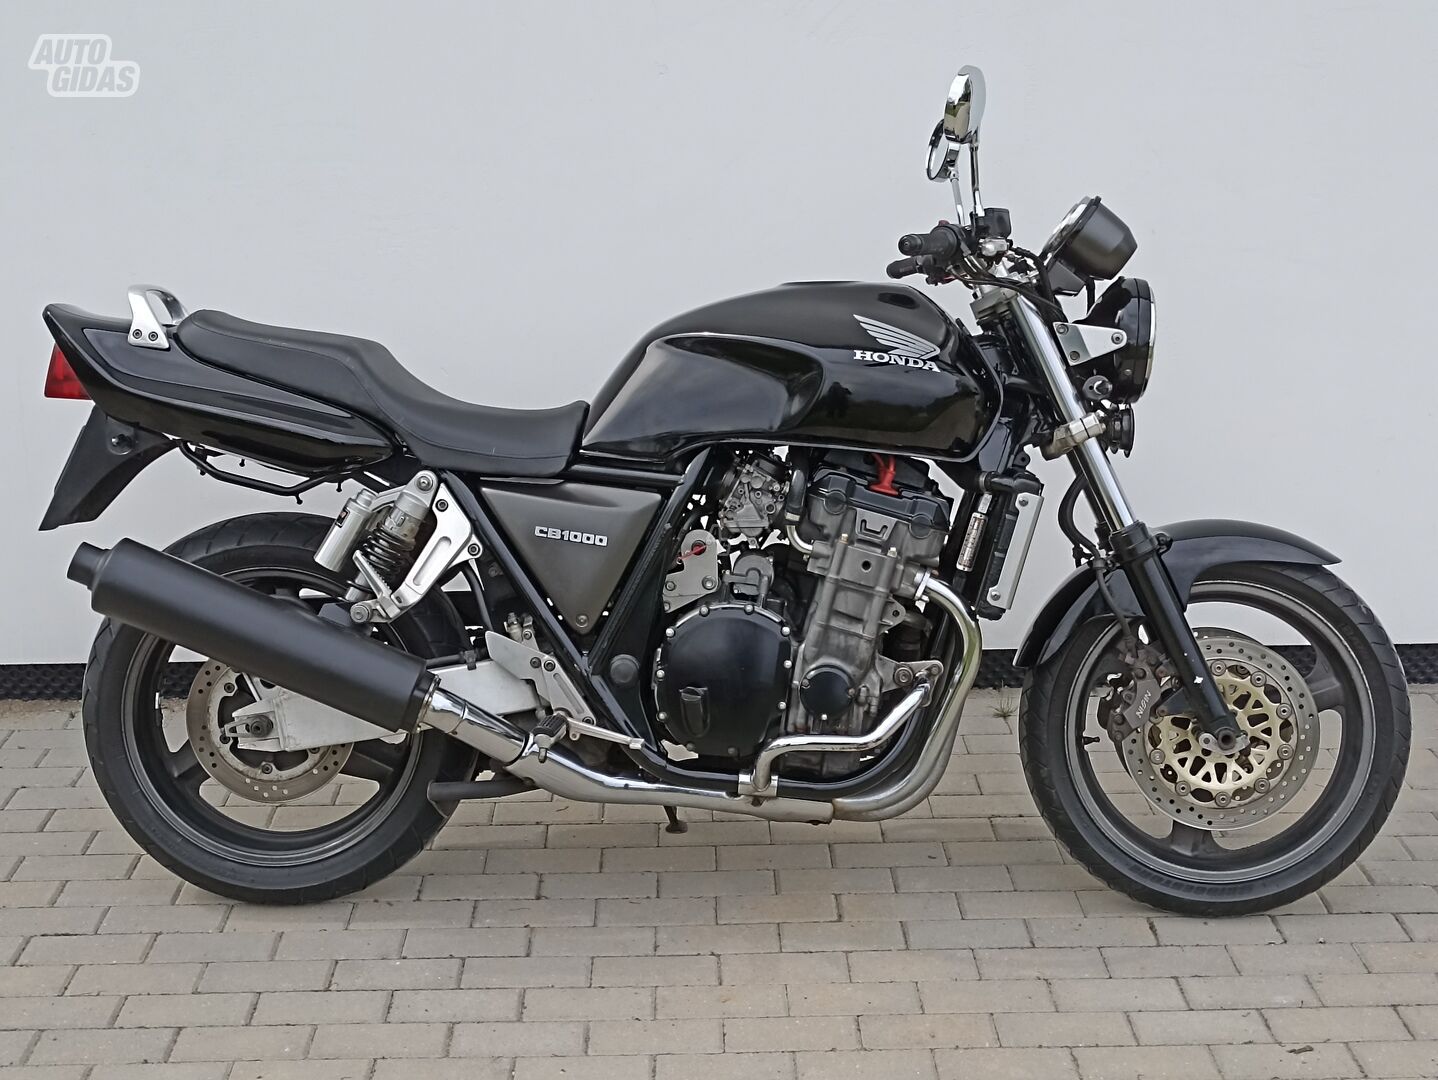 Honda CB 1996 y Classical / Streetbike motorcycle